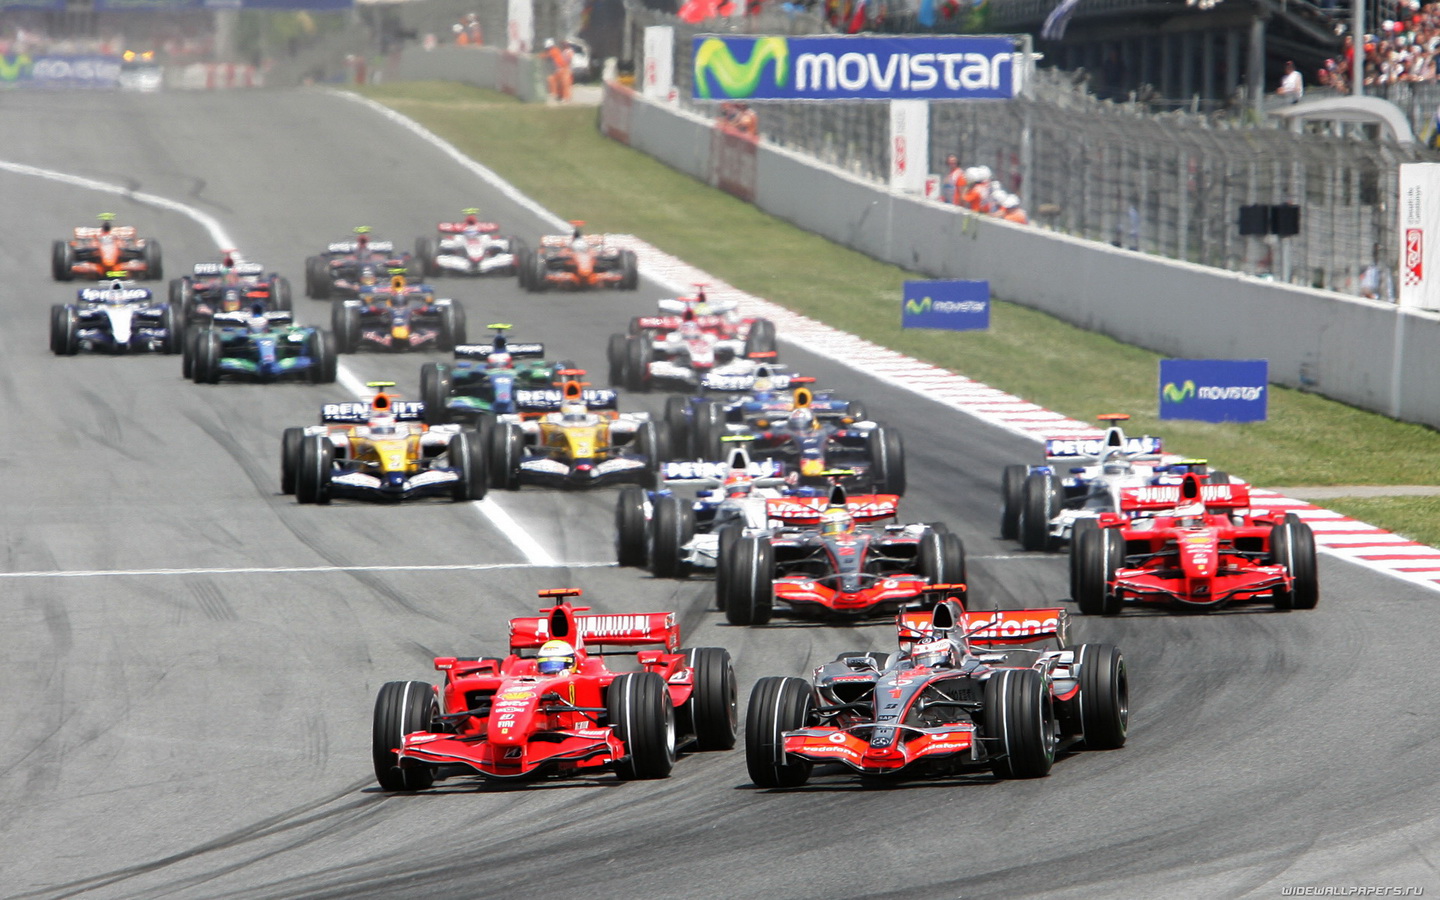 F1 changes race date in Baku